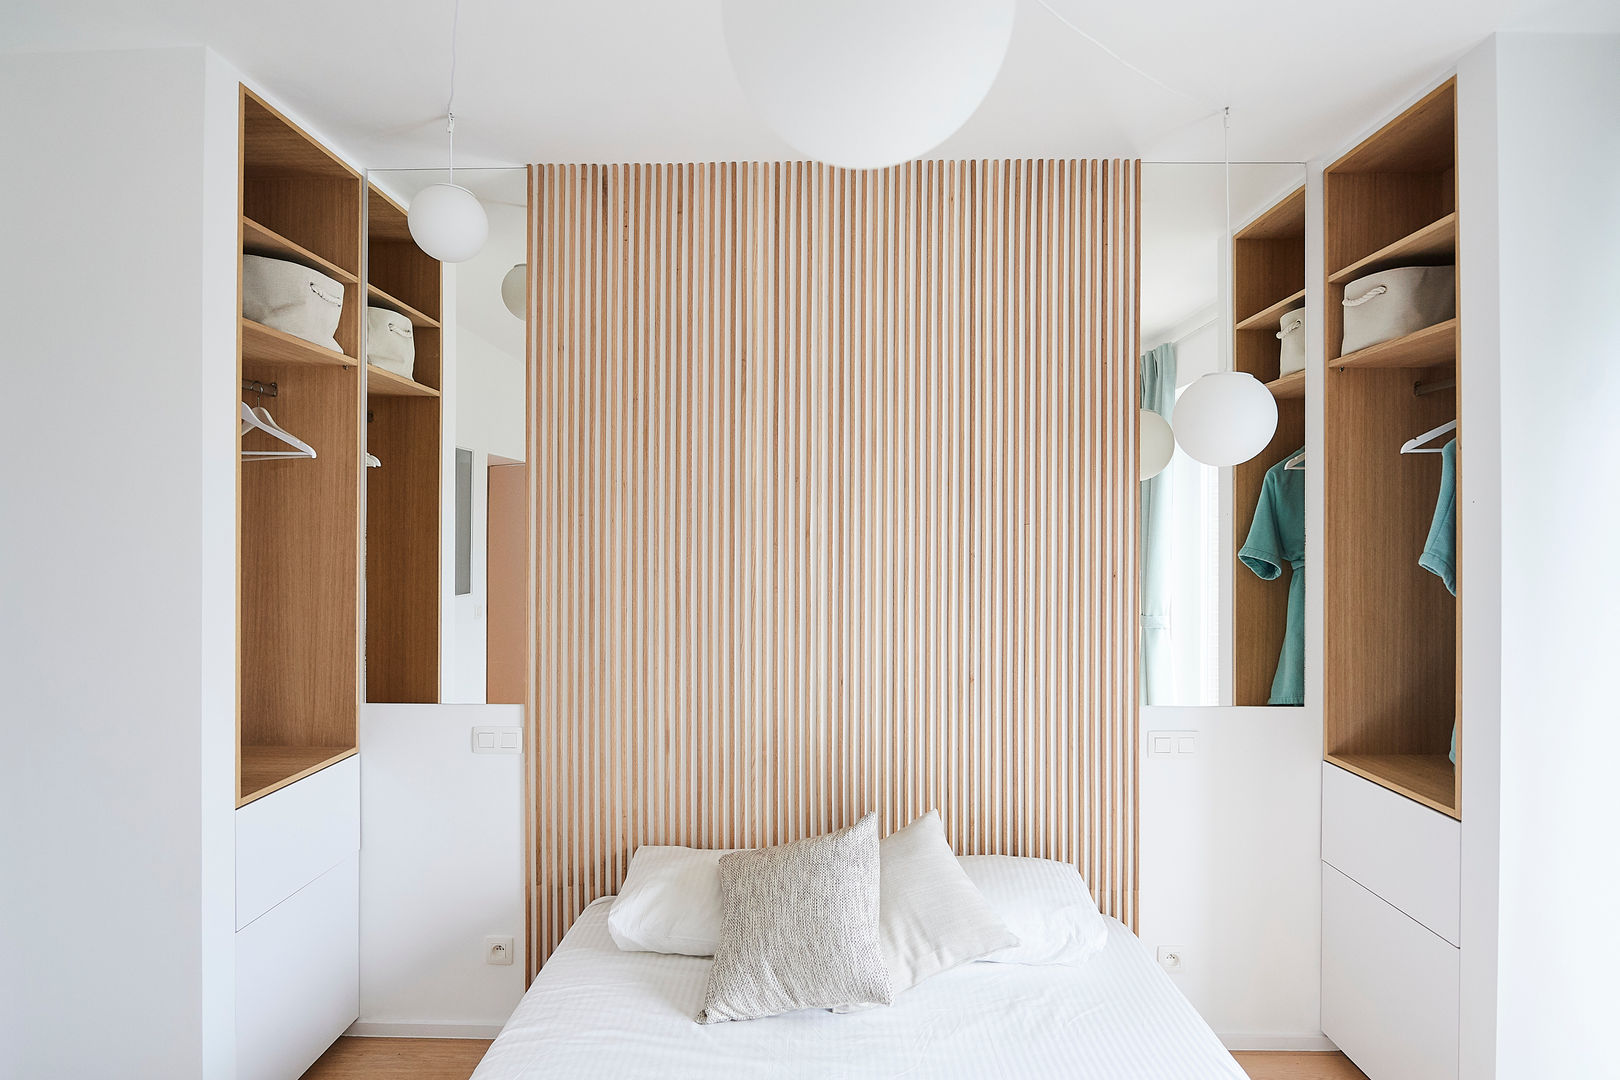 Chambre des invités avec sa salle de bain en suite justinside Chambre minimaliste Bois massif Multicolore chambre à coucher bureau meubles intégrés bois